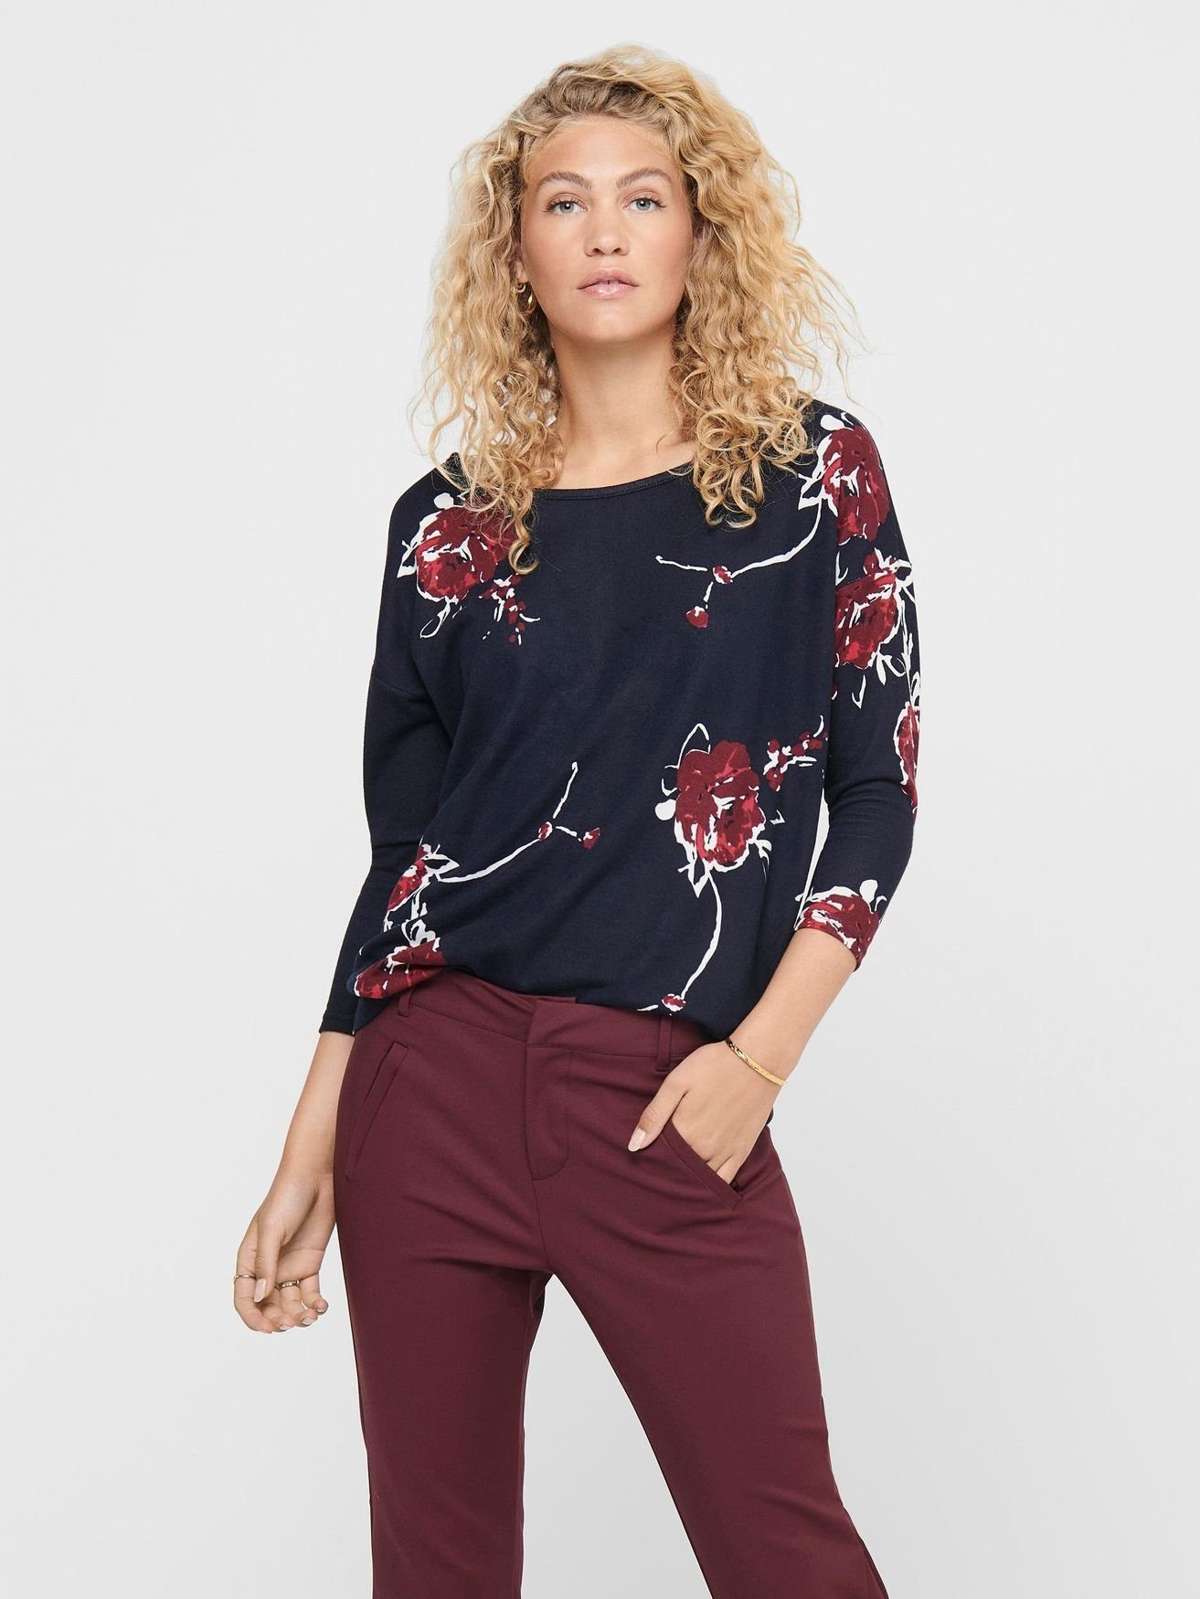 Длинный пуловер с принтом, рубашка с рукавами 3/4 Тонкий пуловер с круглым вырезом и узором ONLELCOS 5117 в цвете Черный-6